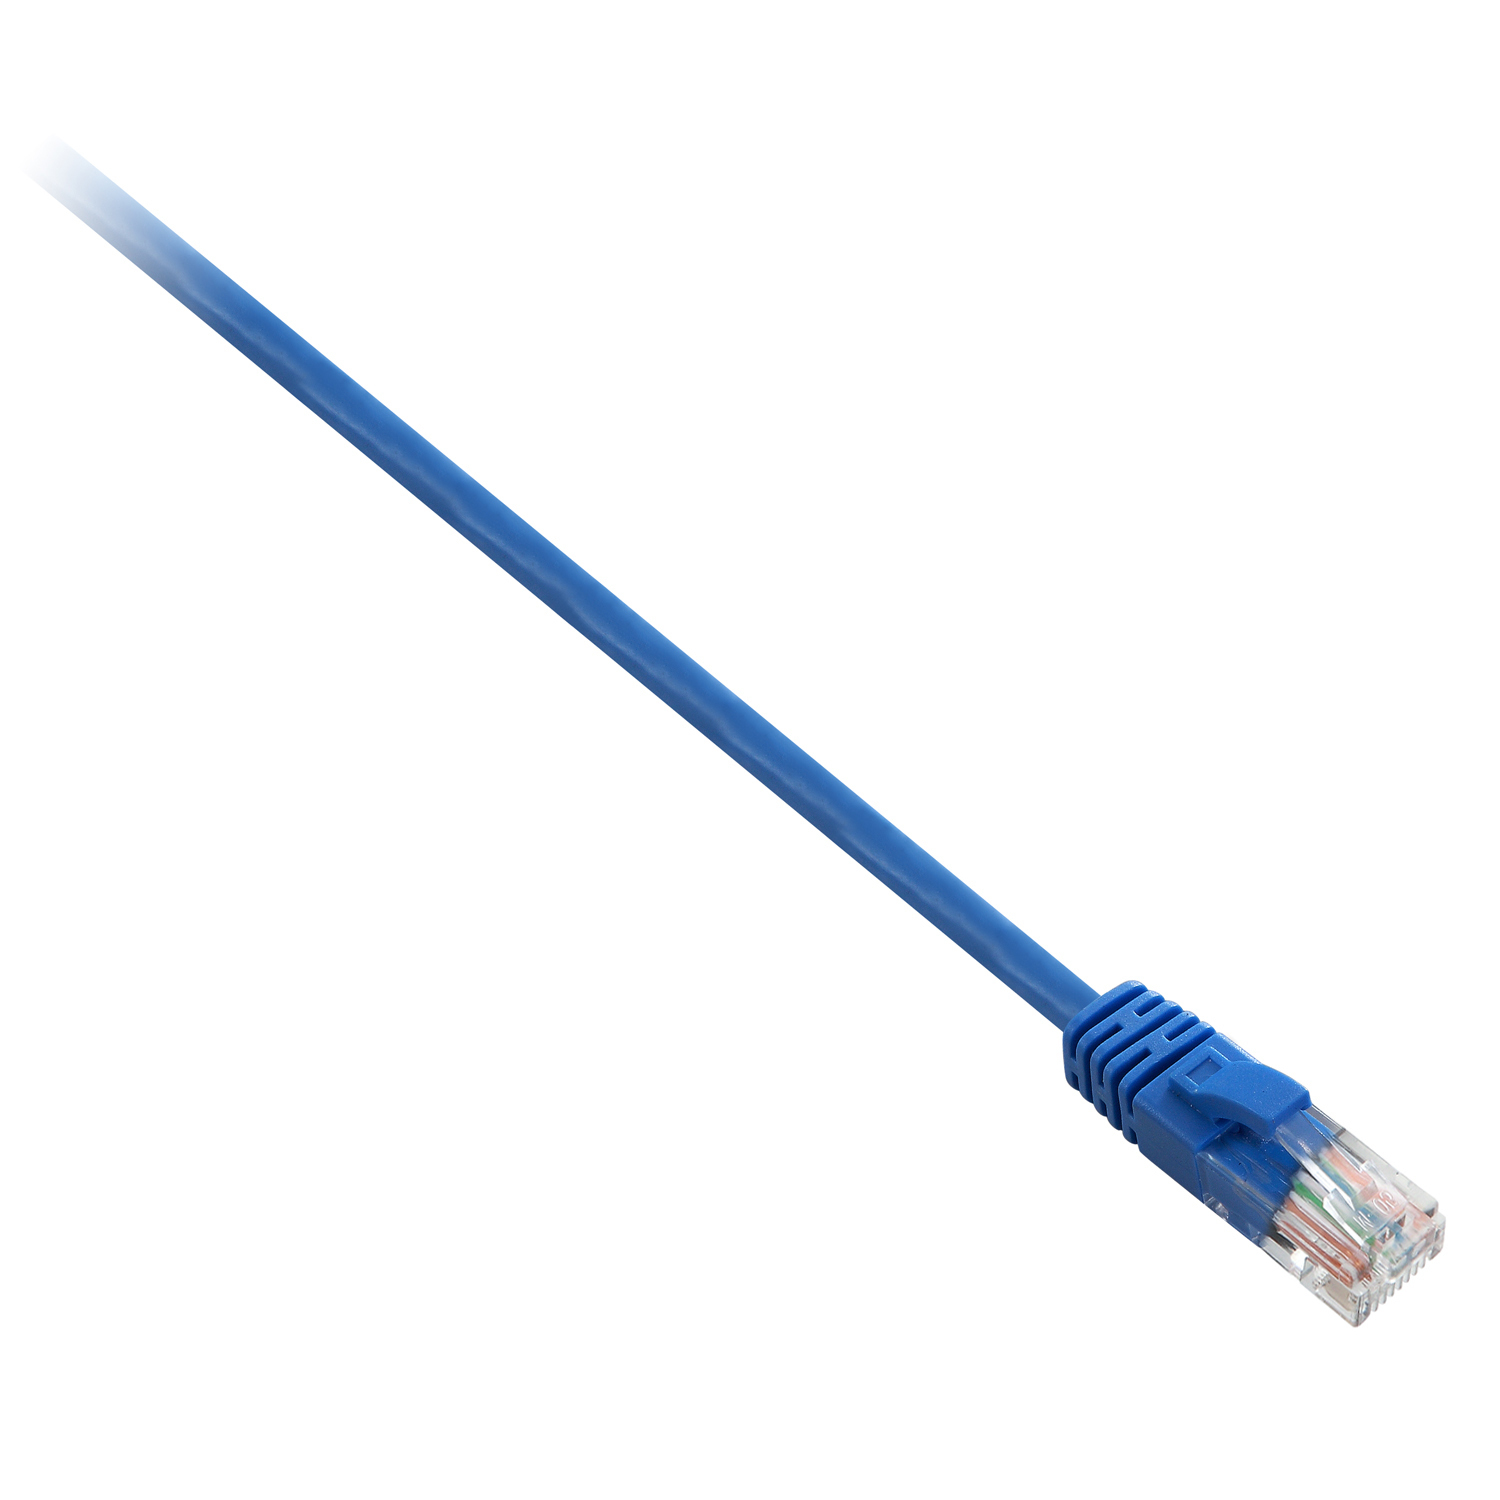 Cavo di Rete Cat5e Utp 5m Blu V7 Cables V7e3c5u 05m Bls 4038489019486